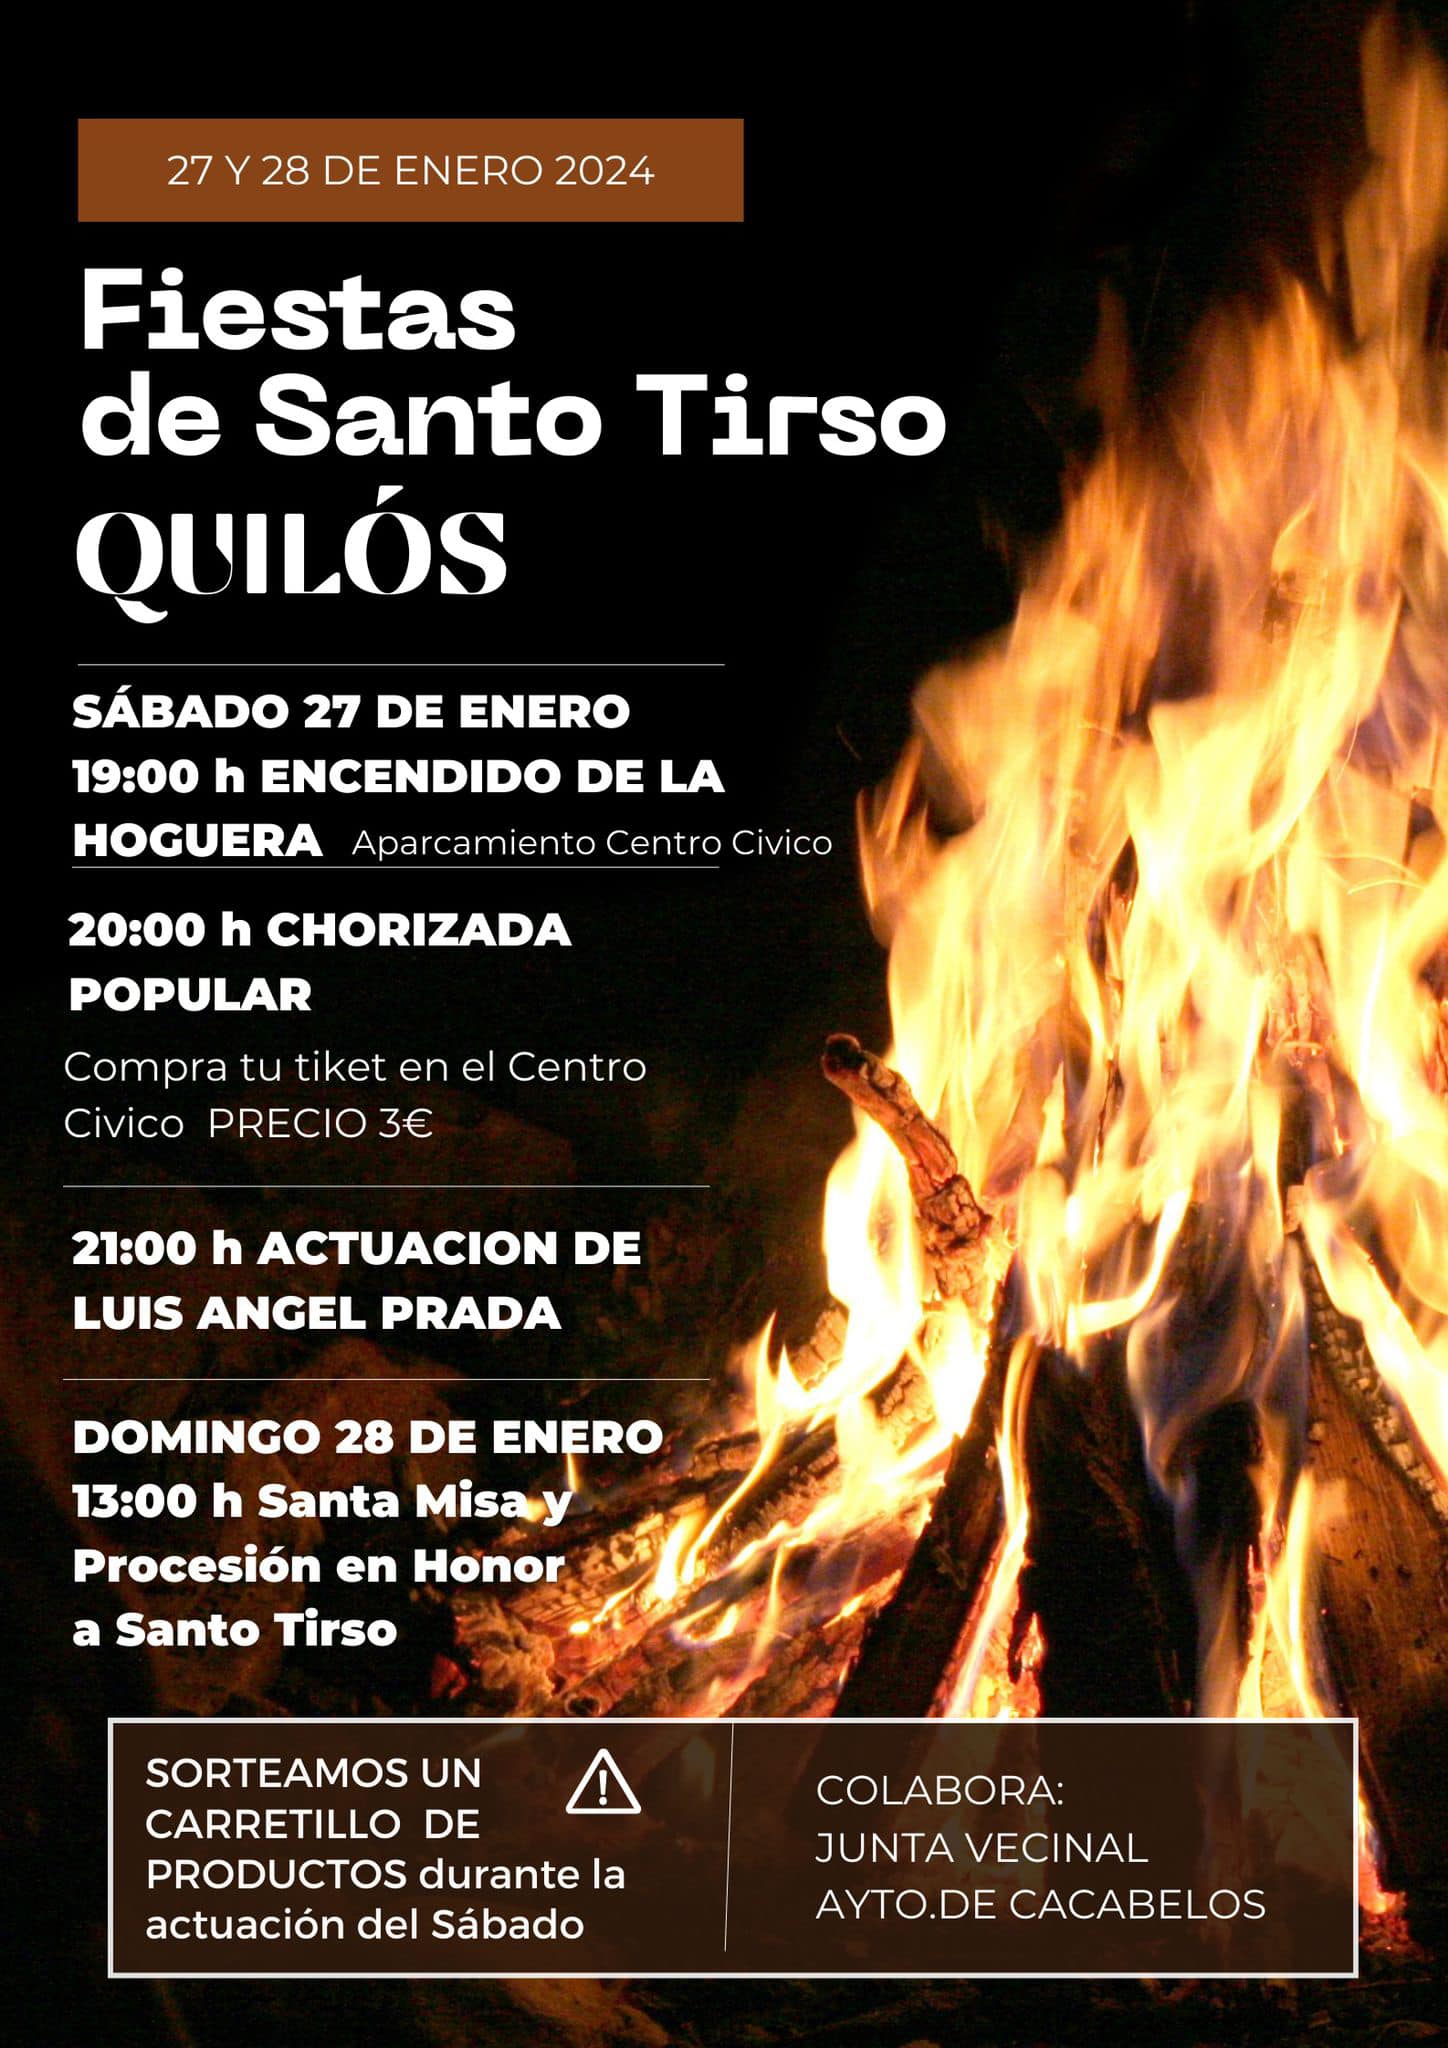 Quilós celebra Santo Tirso los días 27 y 28 de enero con su tradicional hoguera, chorizada y música 2